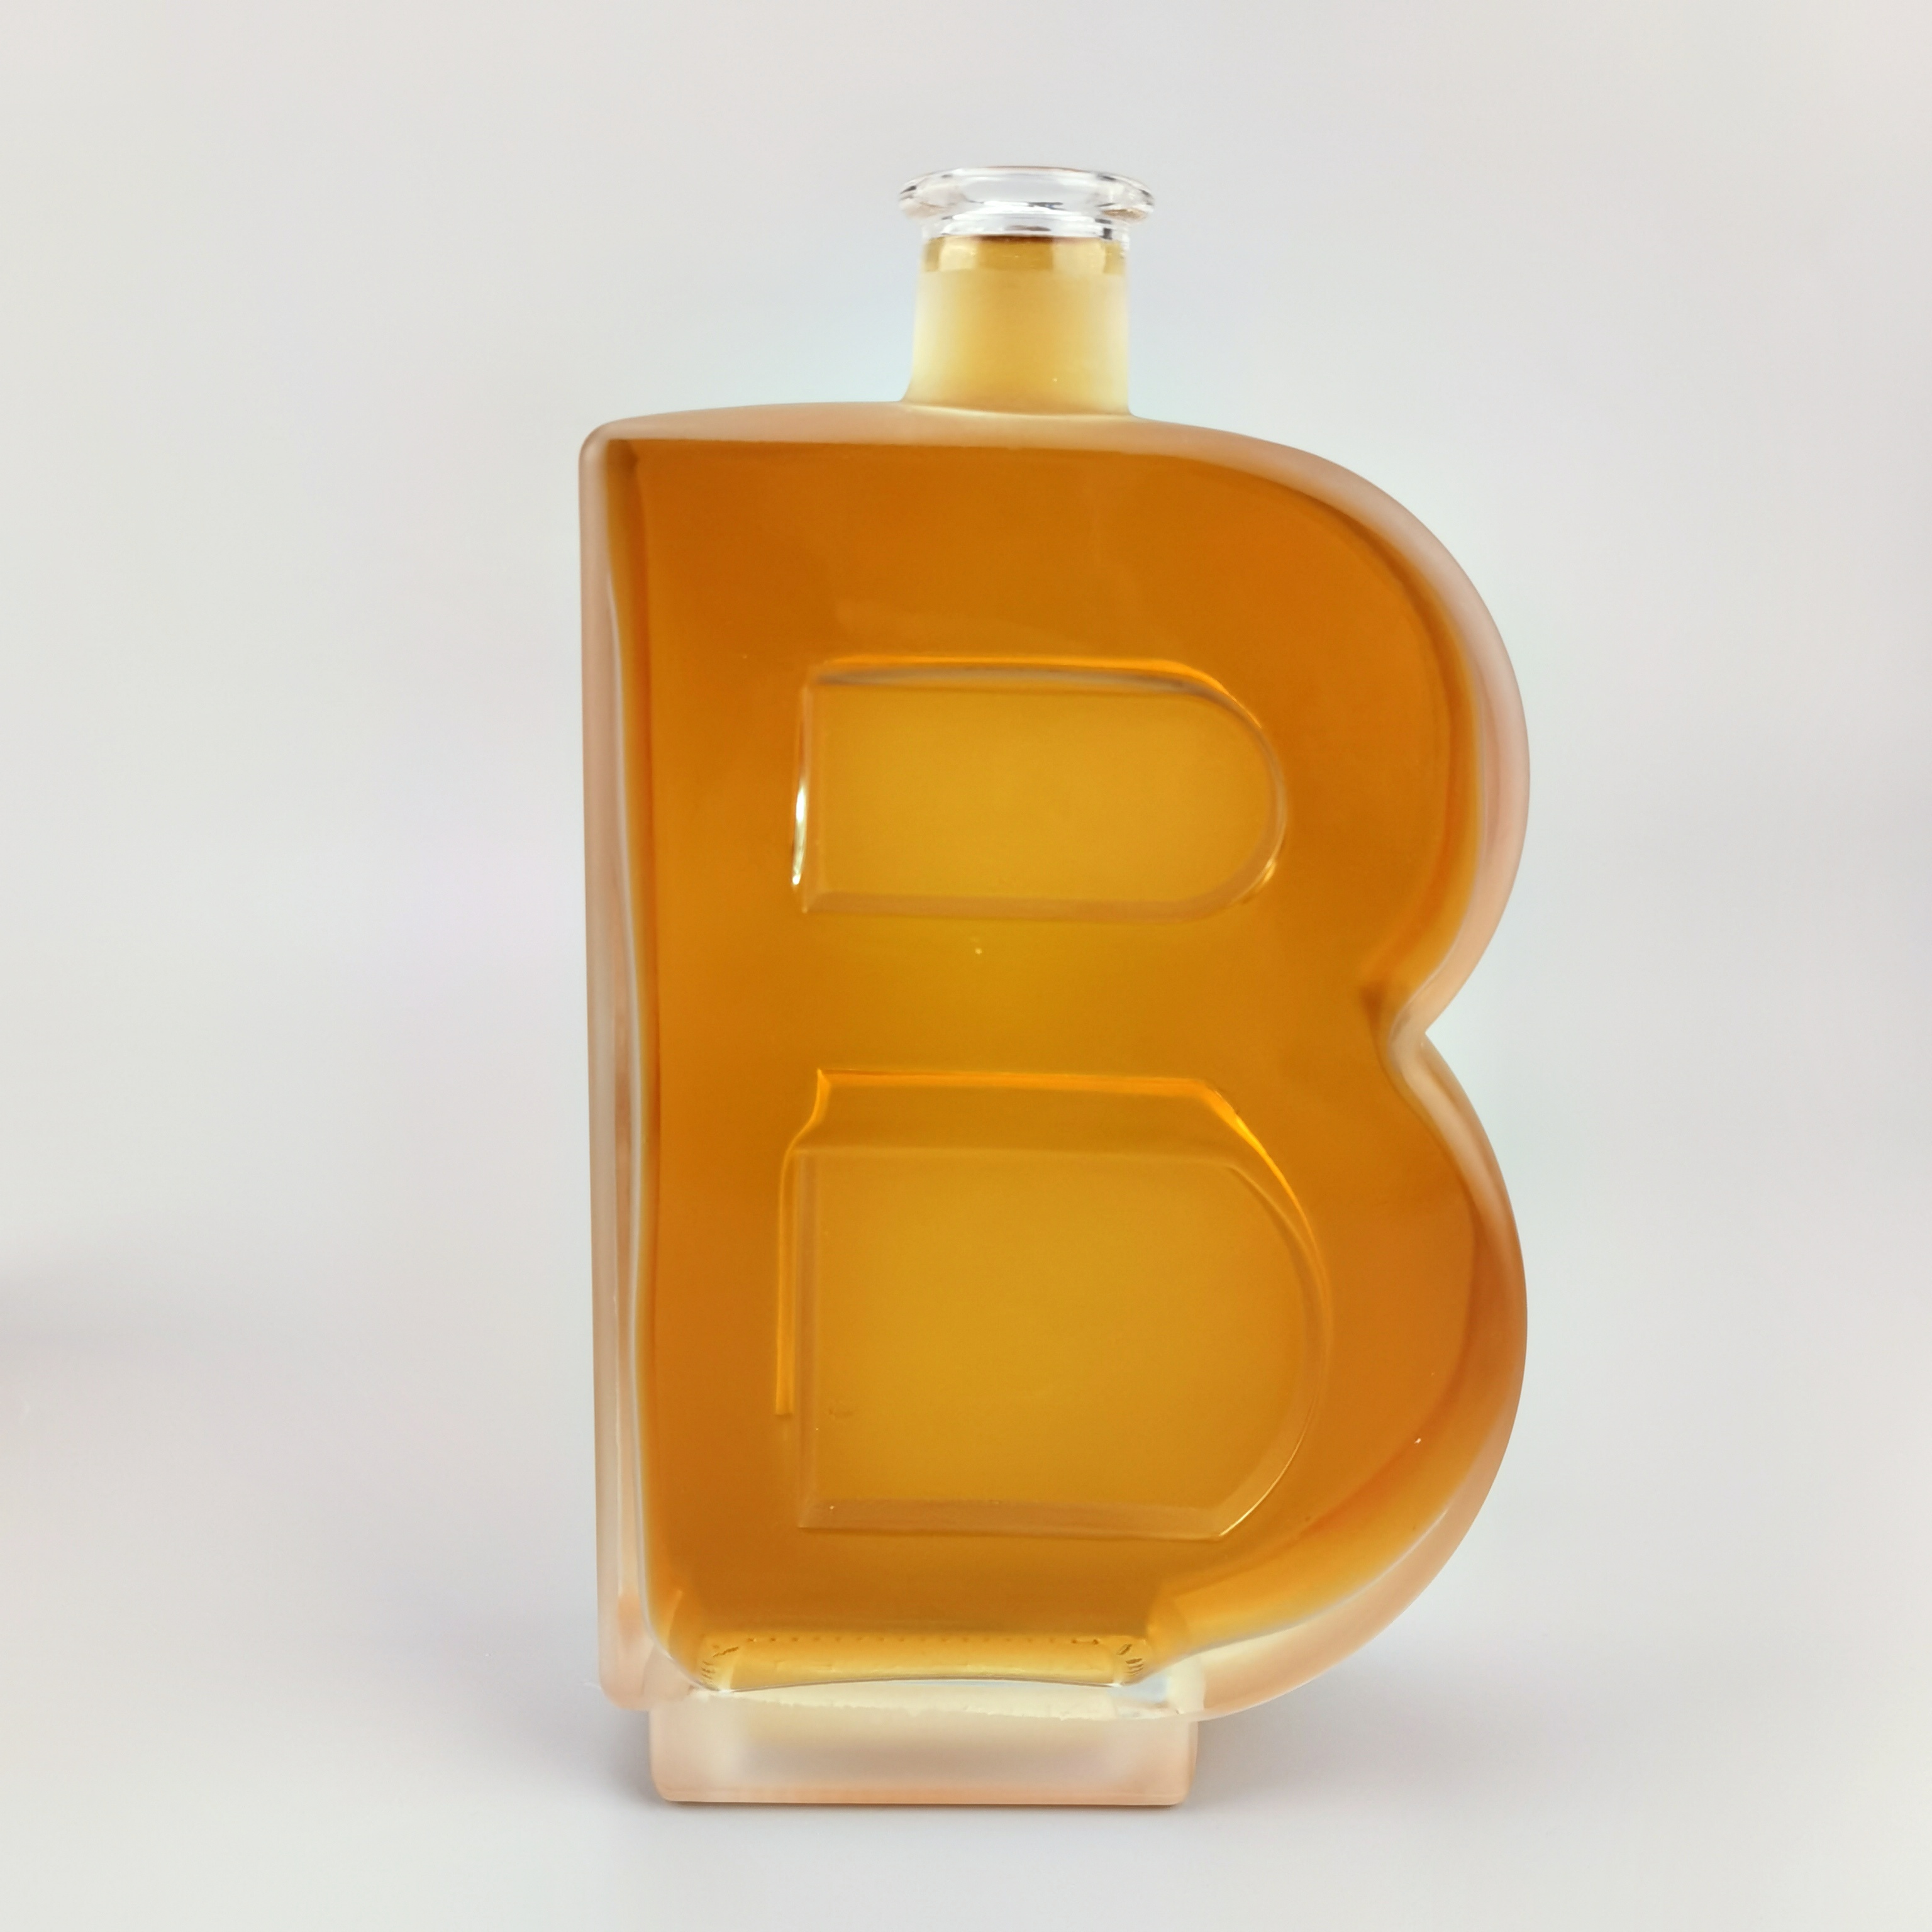 770ml Letter-shaped empty glass wine bottle